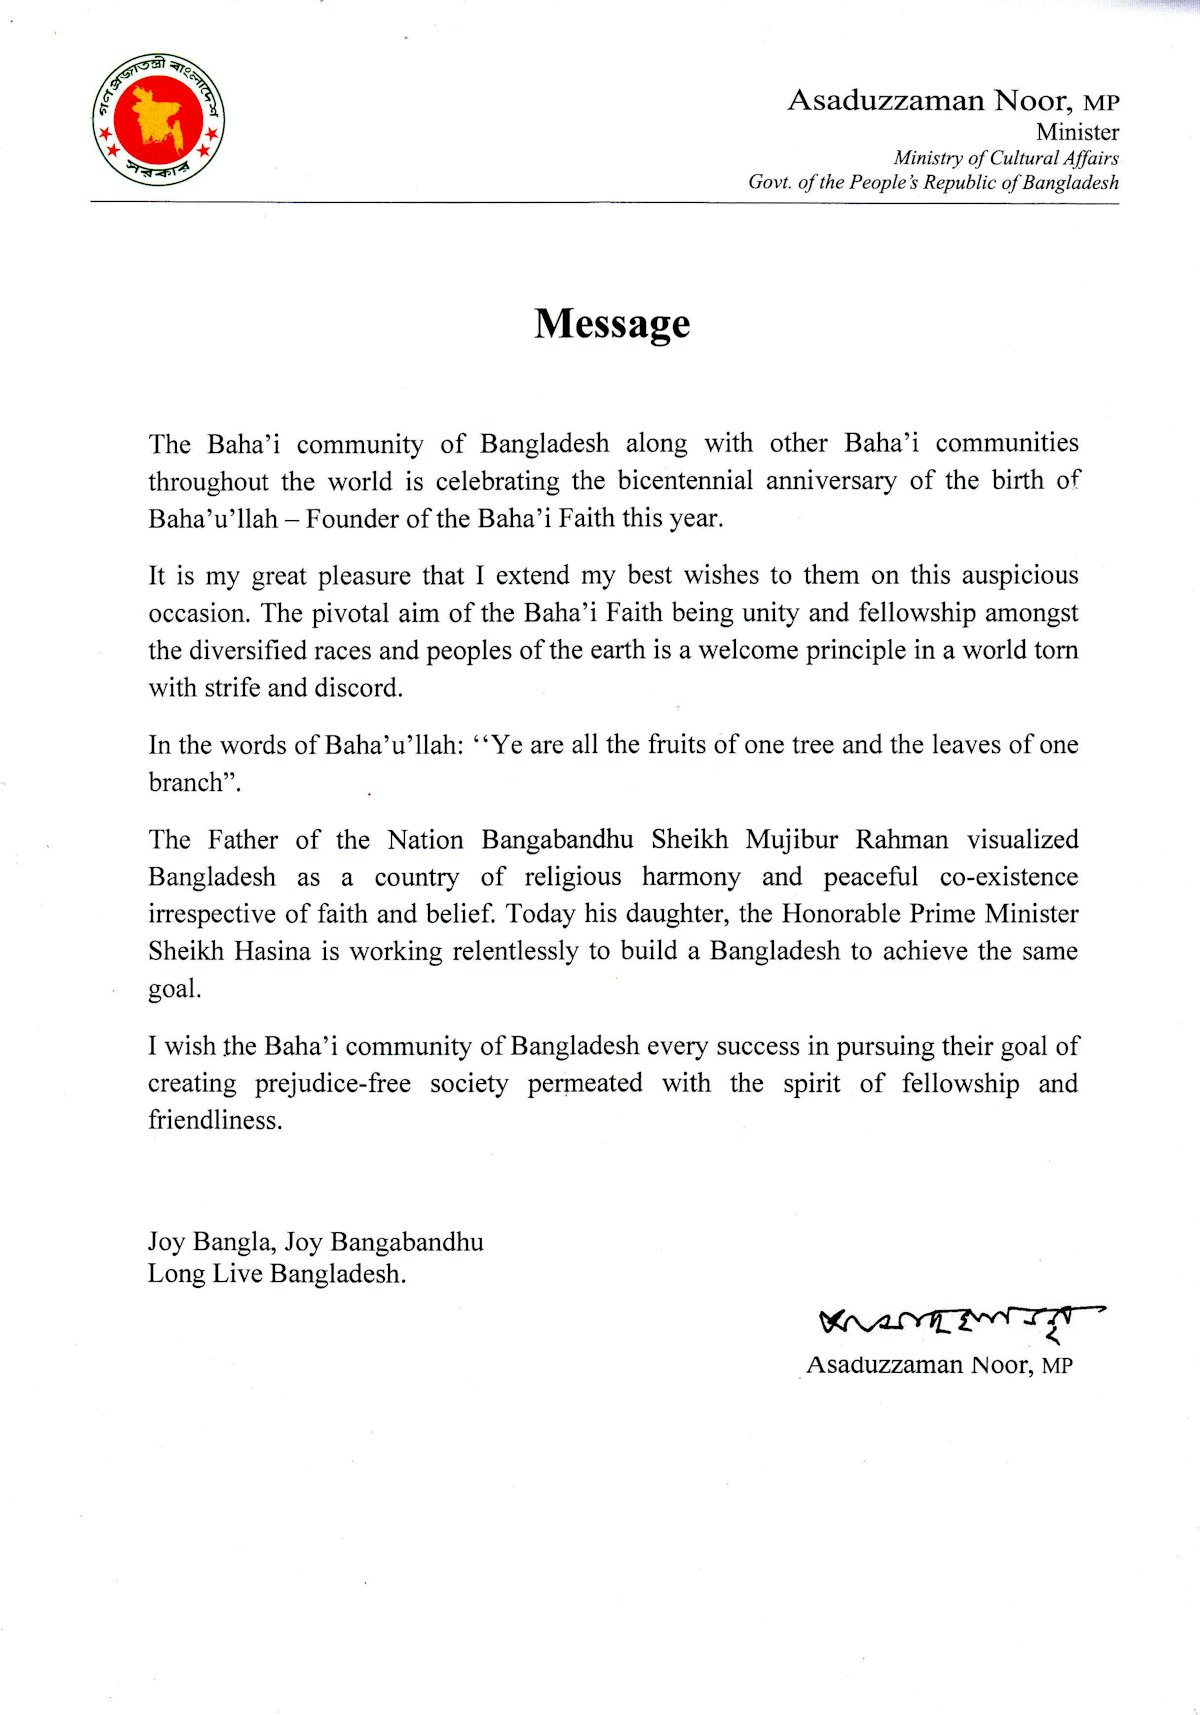 Un mensaje de Asaduzzaman Noor, ministro de Asuntos Culturales de Bangladesh, a la comunidad bahá’í.